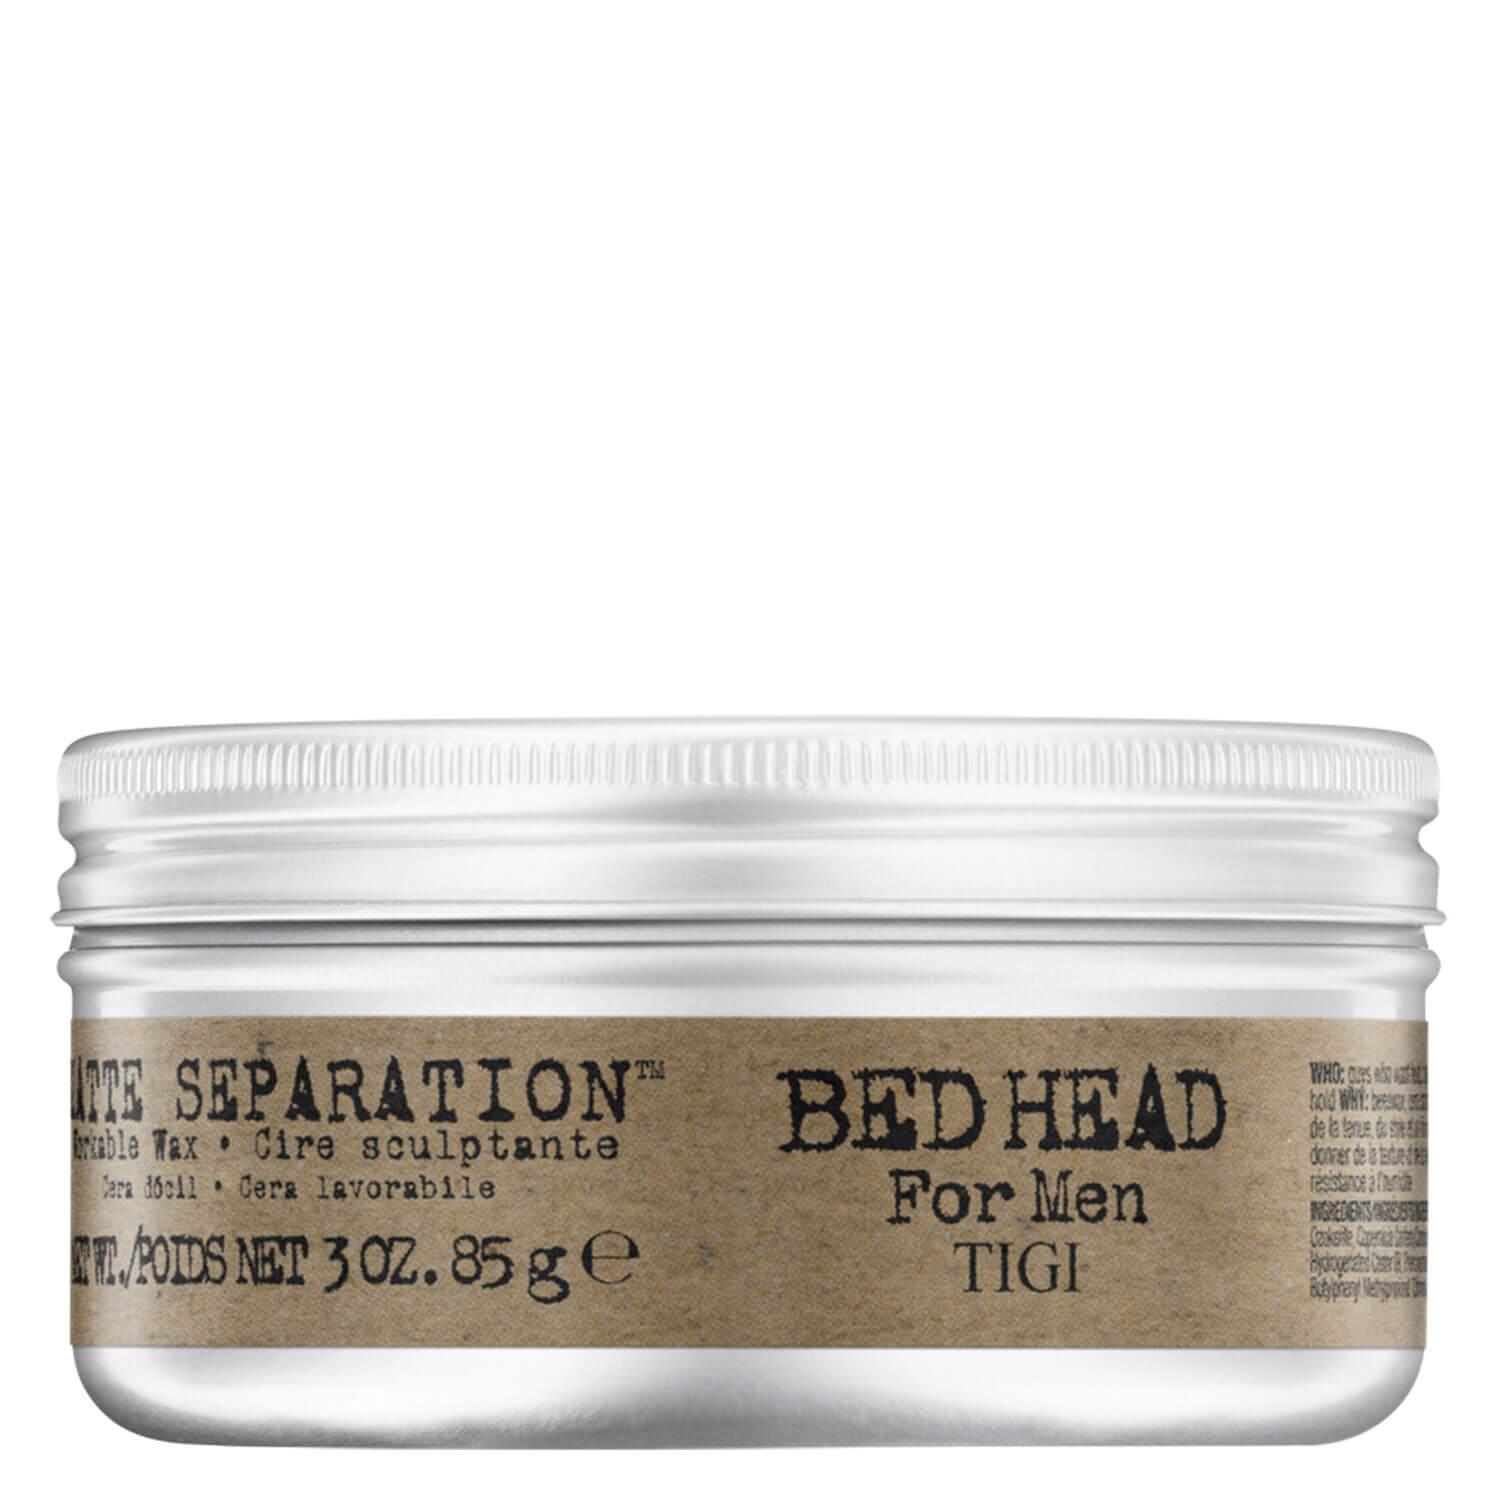 Bed Head For Men - Matte Separation